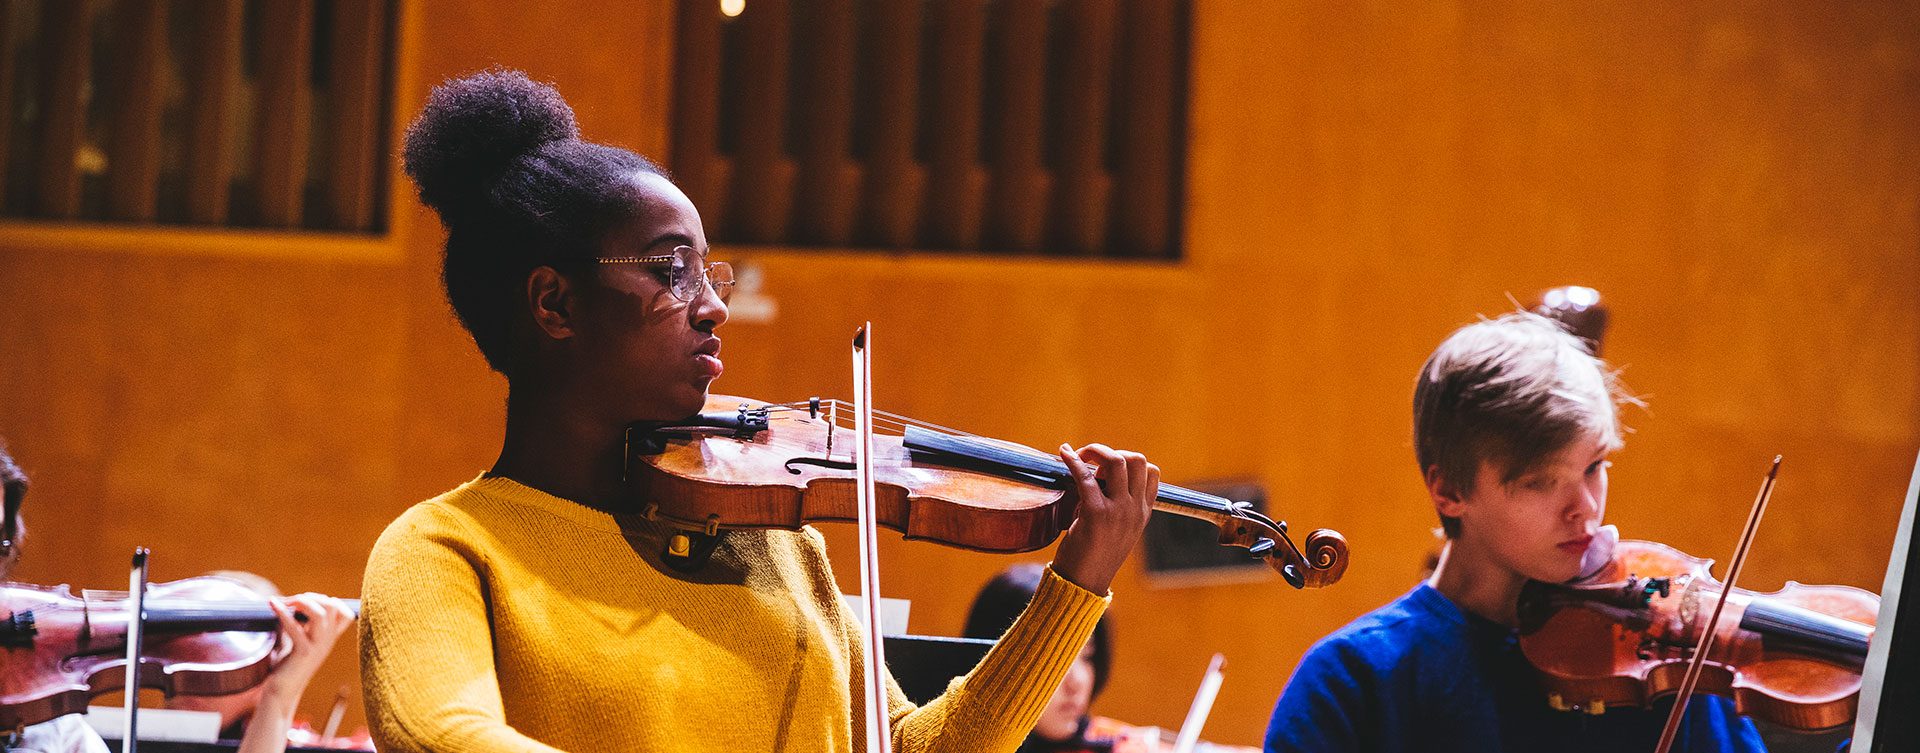 Ung musiker spelar violin, flera unga musiker syns bakom och vid sidan av henne.